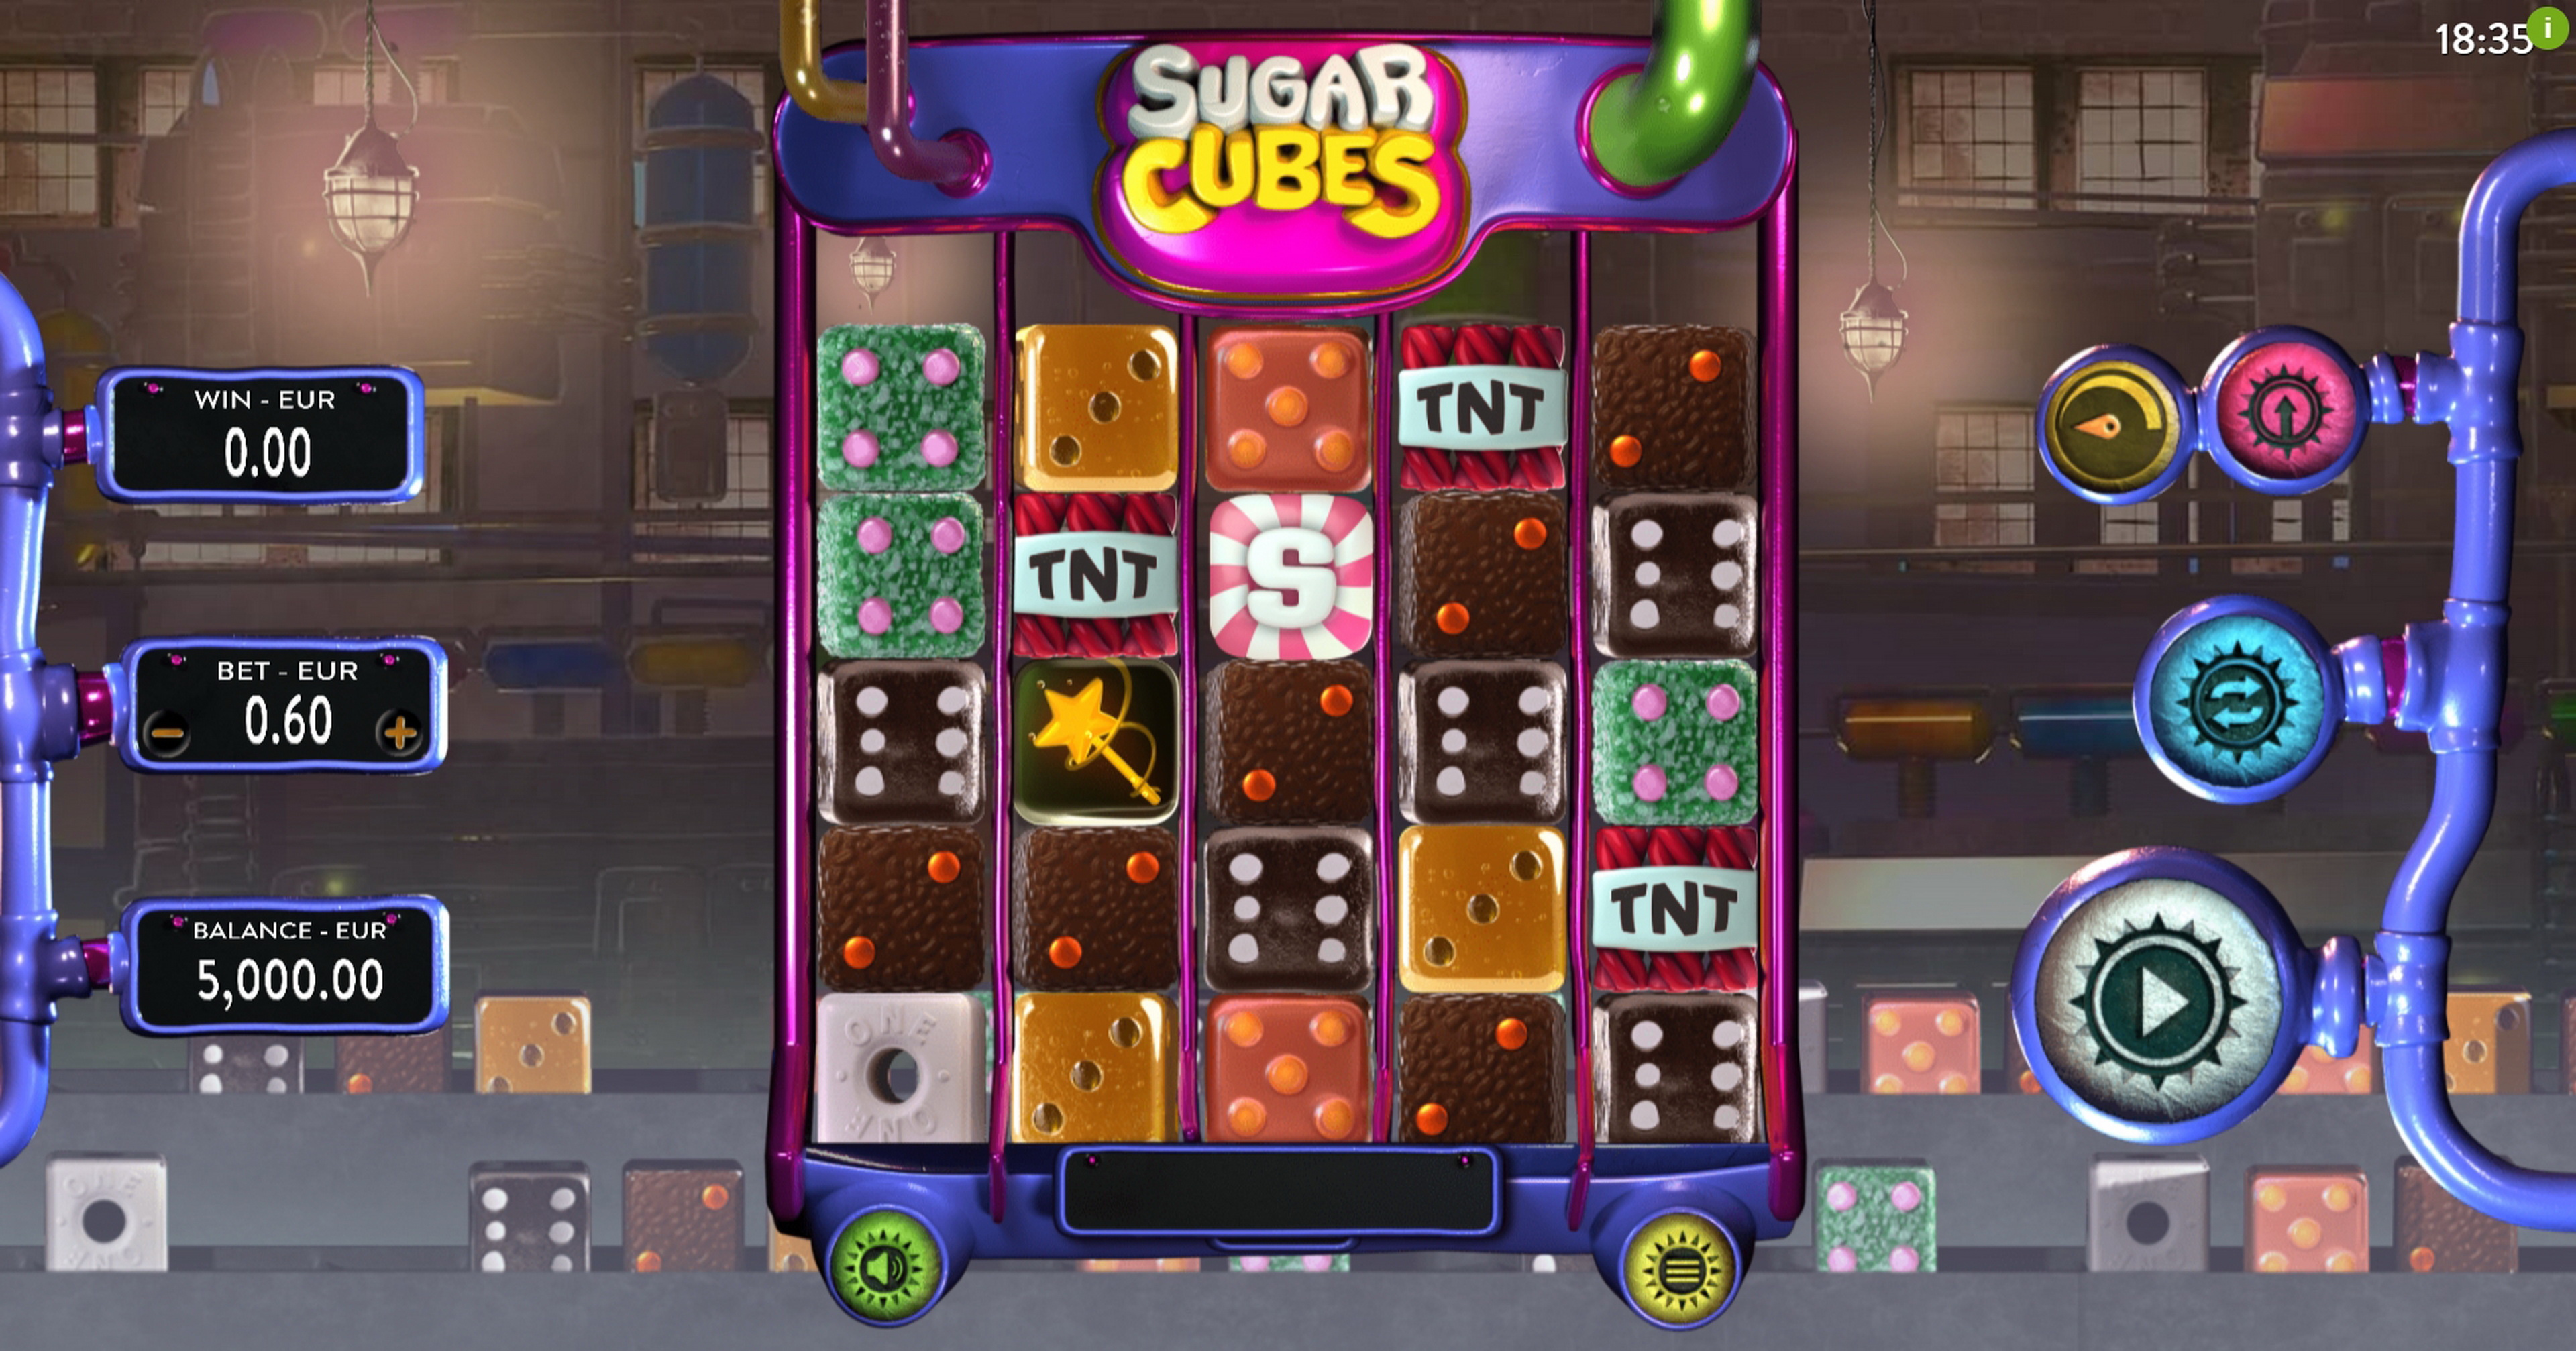 Reels in Sugar Cubes Slot Game by DiceLab